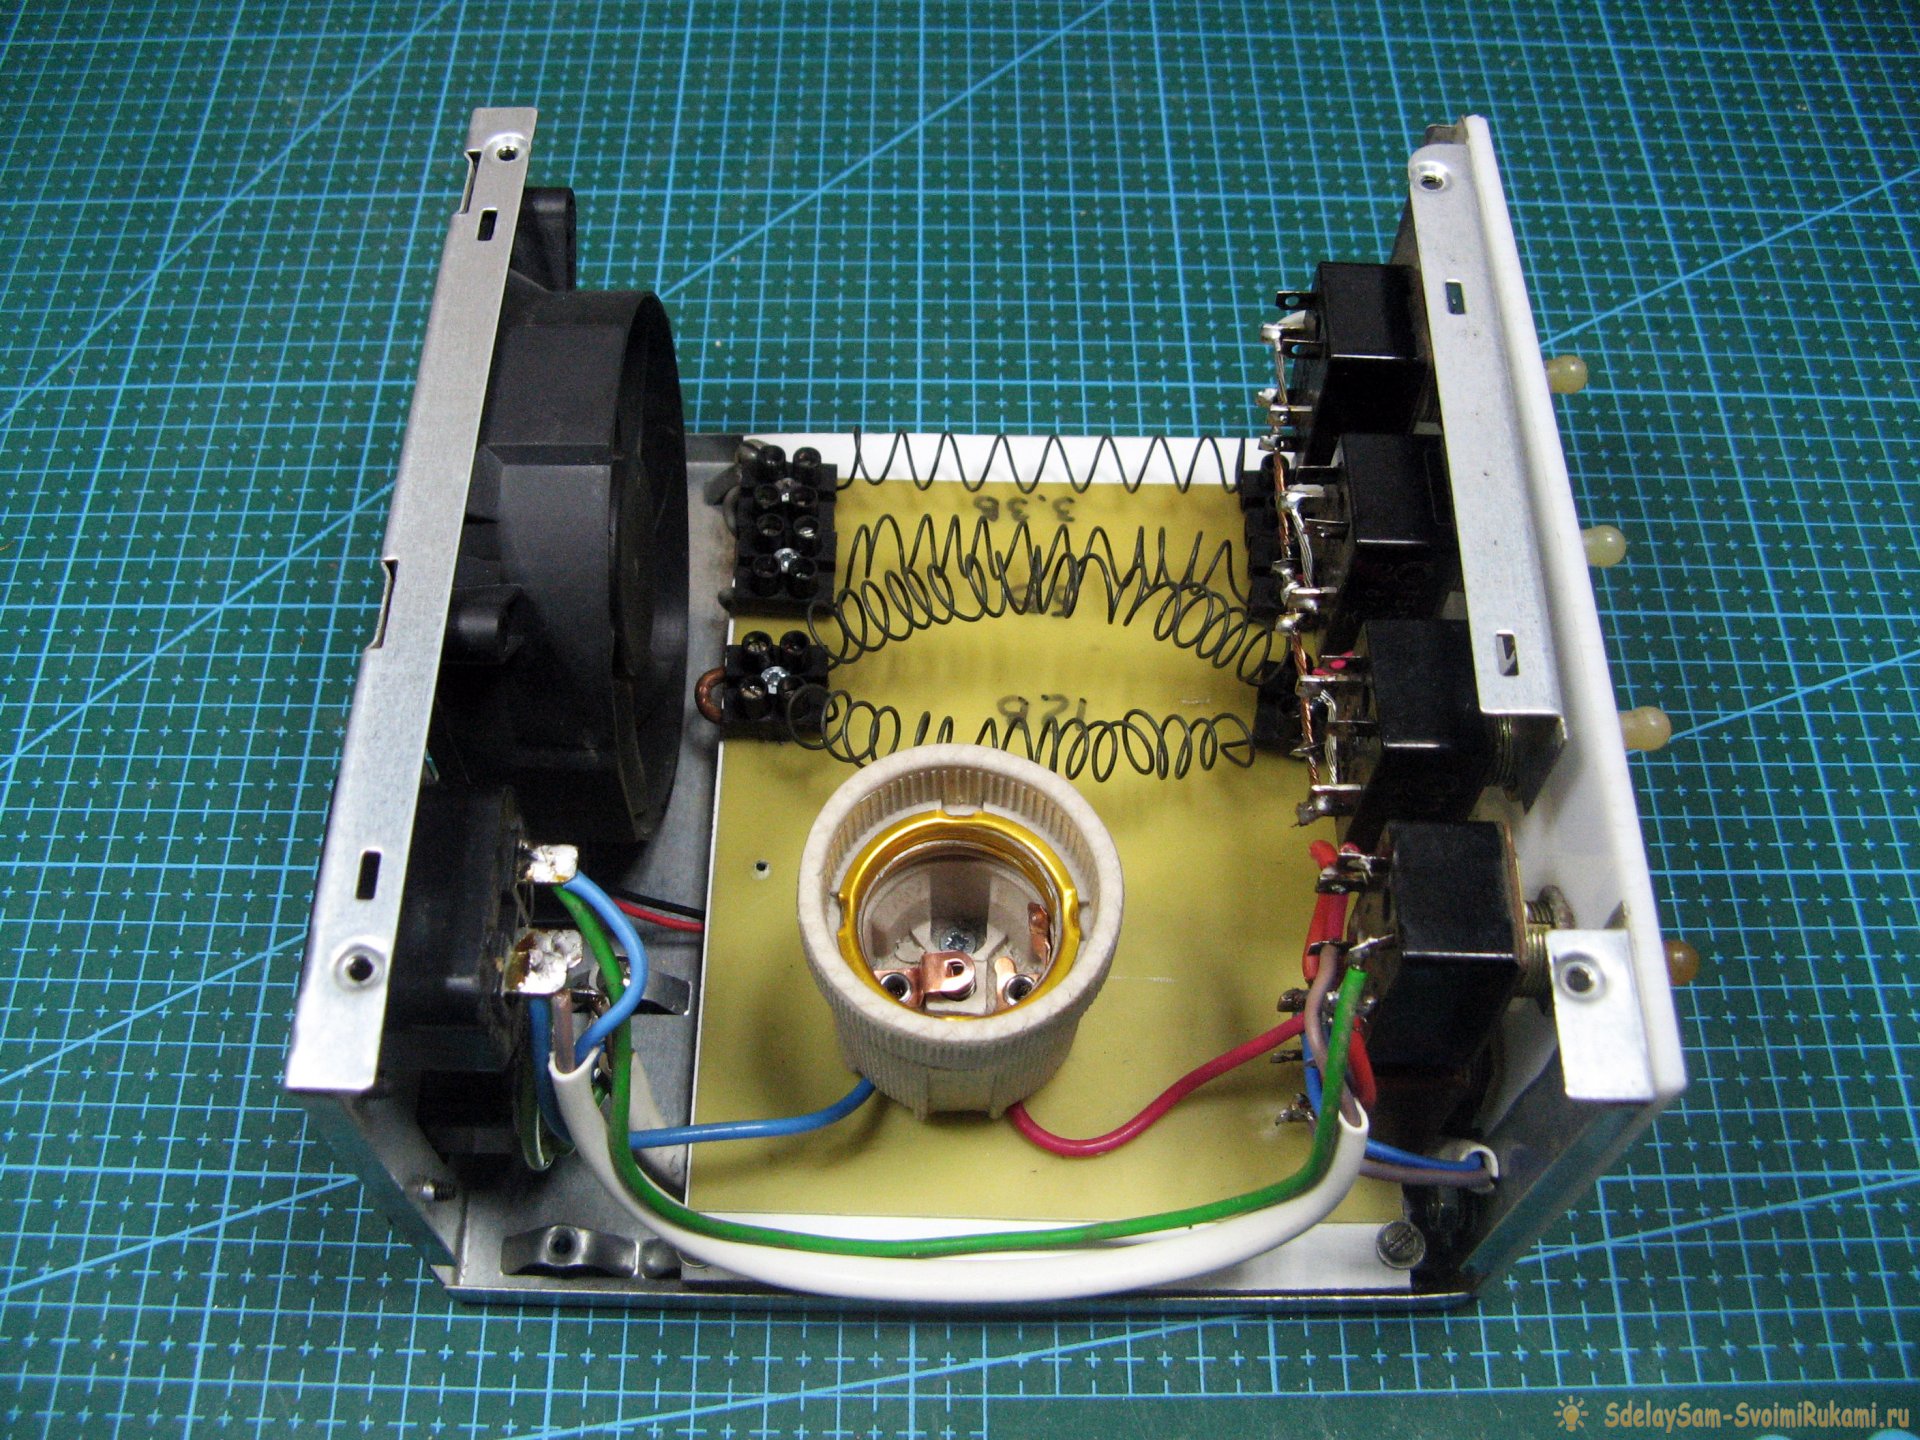 «Нагружатор» - крайне необходимый и нужный прибор для ремонта электроники